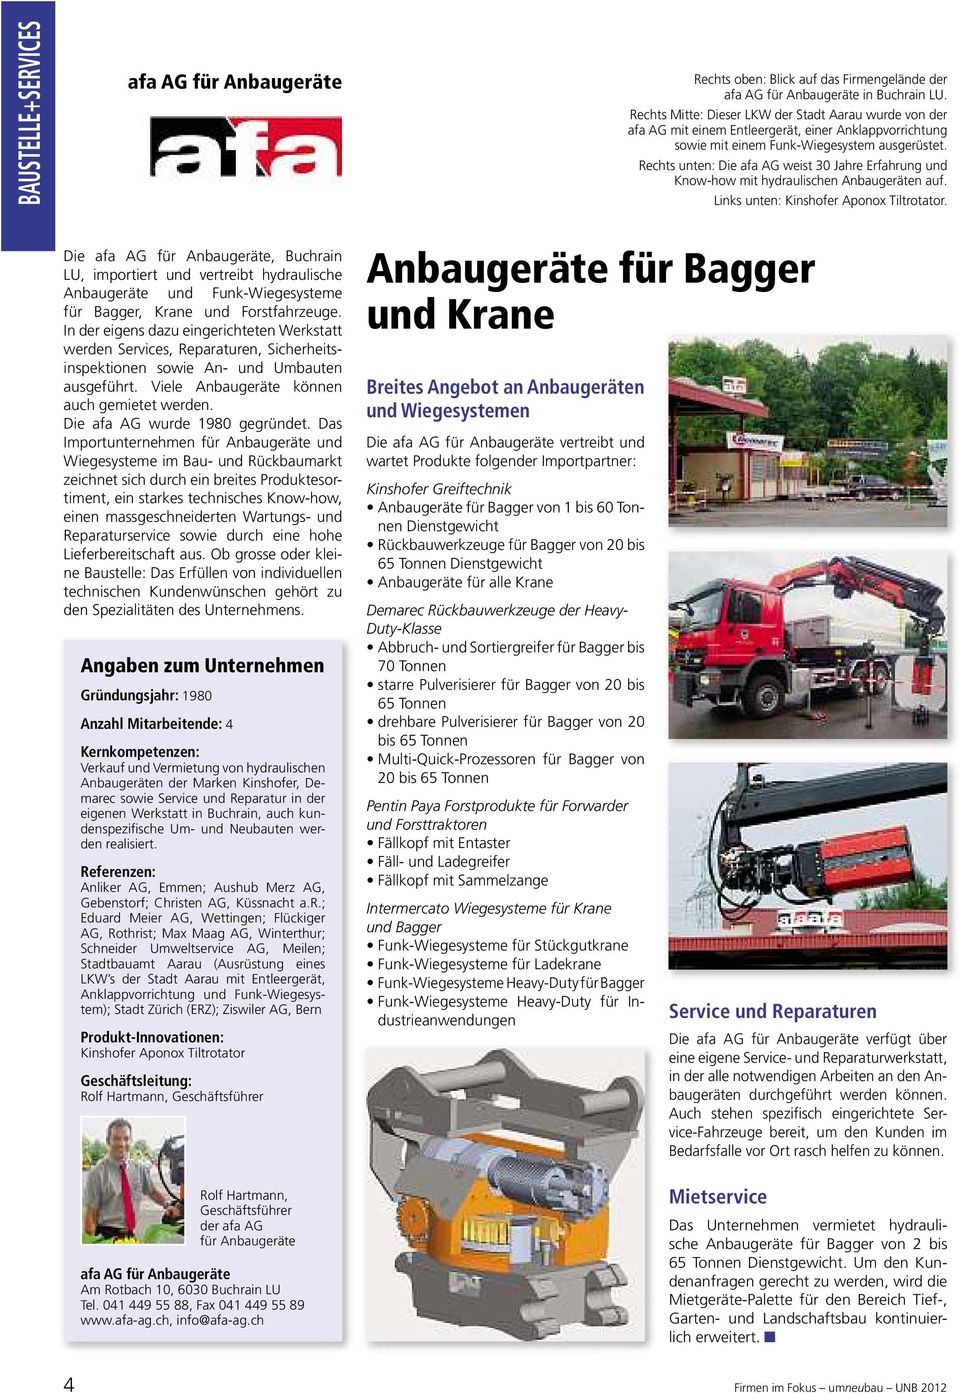 Rechts unten: Die afa AG weist 30 Jahre Erfahrung und Know-how mit hydraulischen Anbaugeräten auf. Links unten: Kinshofer Aponox Tiltrotator.